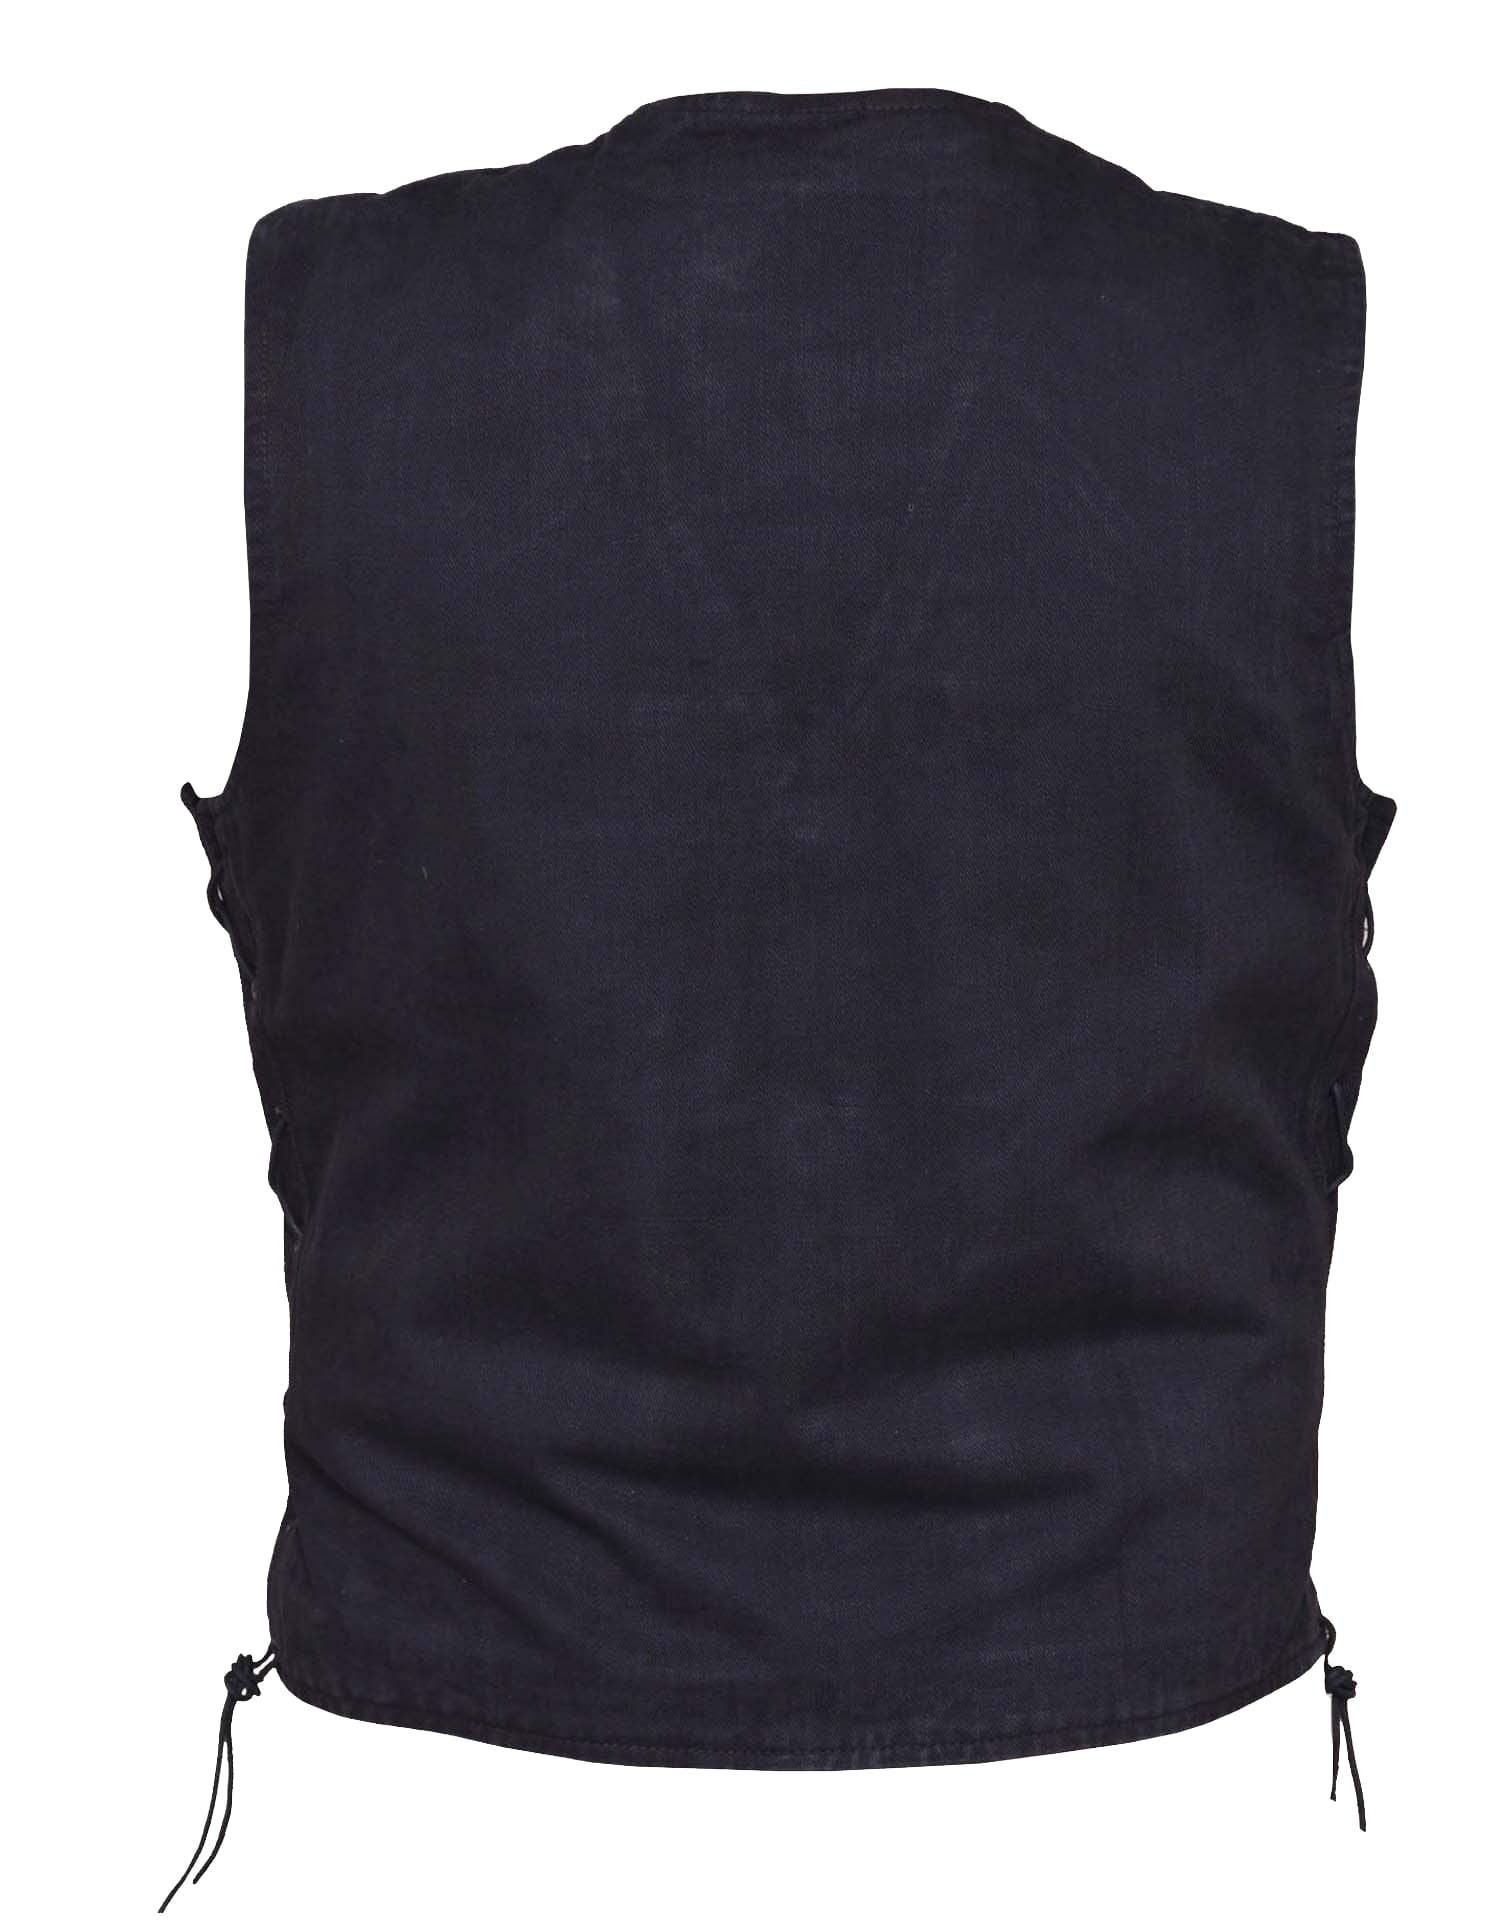 Men's Black Denim Vest With Side Laces - SKU DM2611-BK-UN